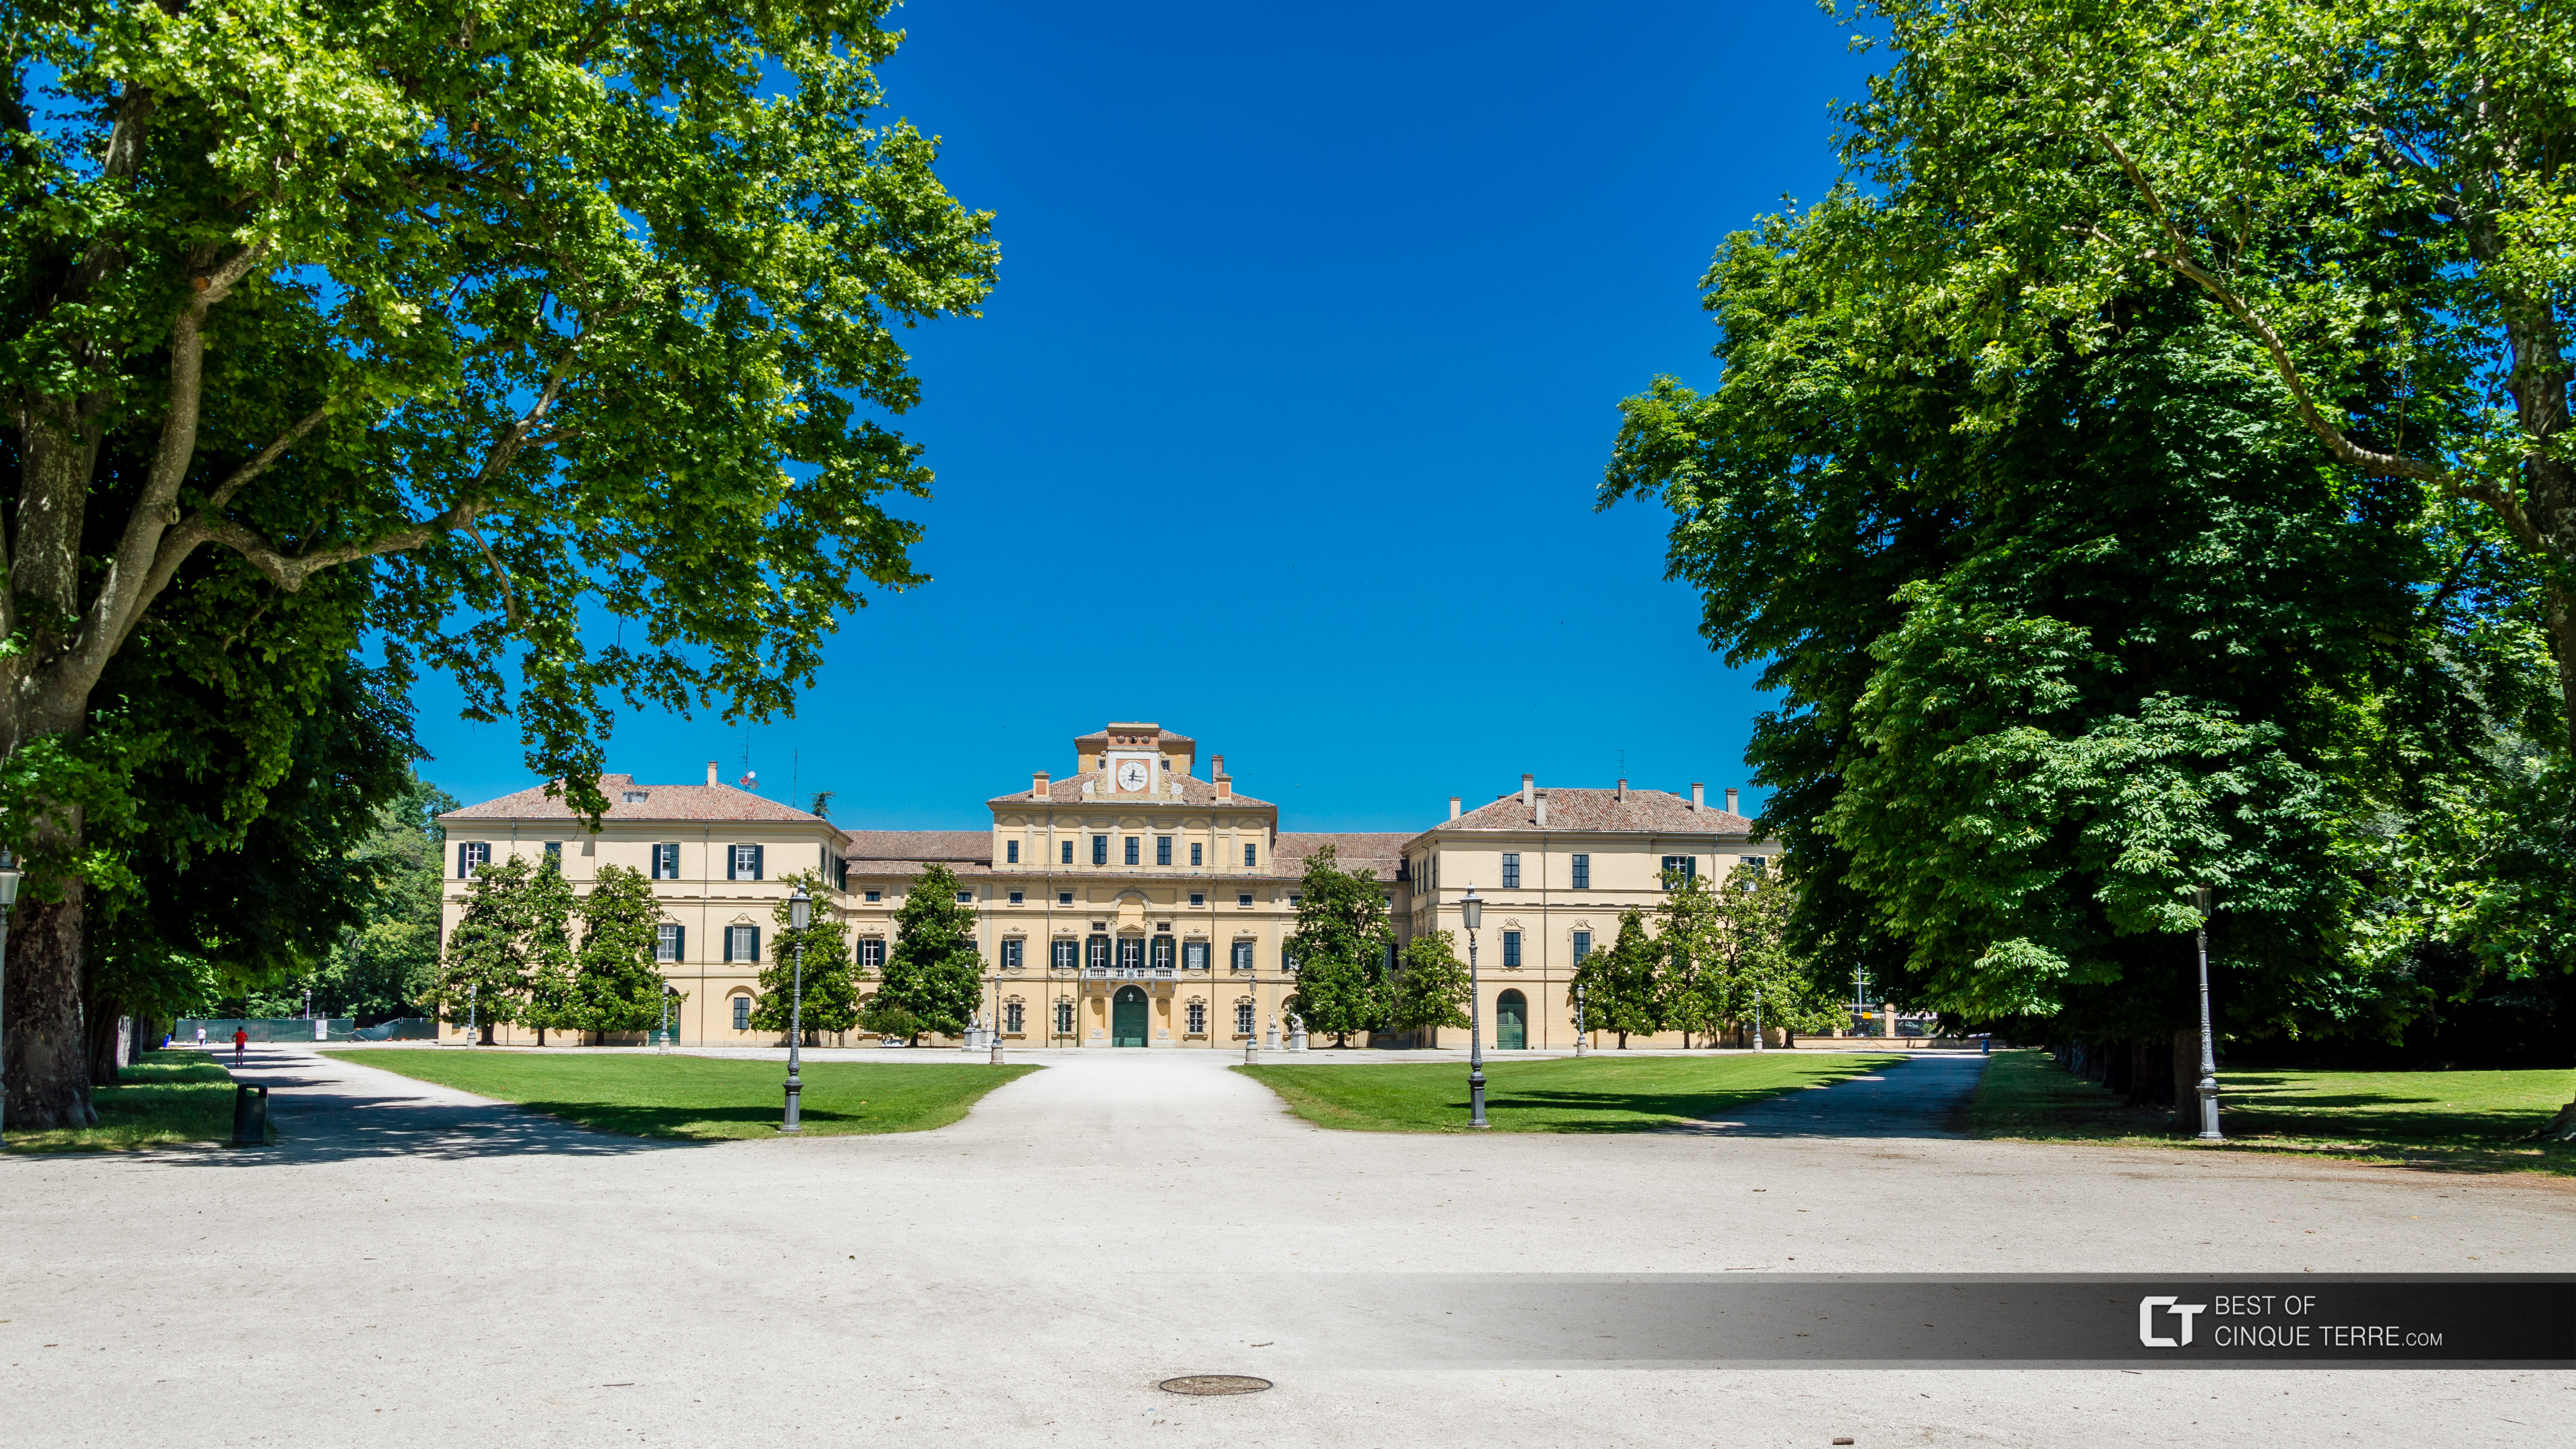 Palatul Ducale în Parcul Ducale, Parma, Italia